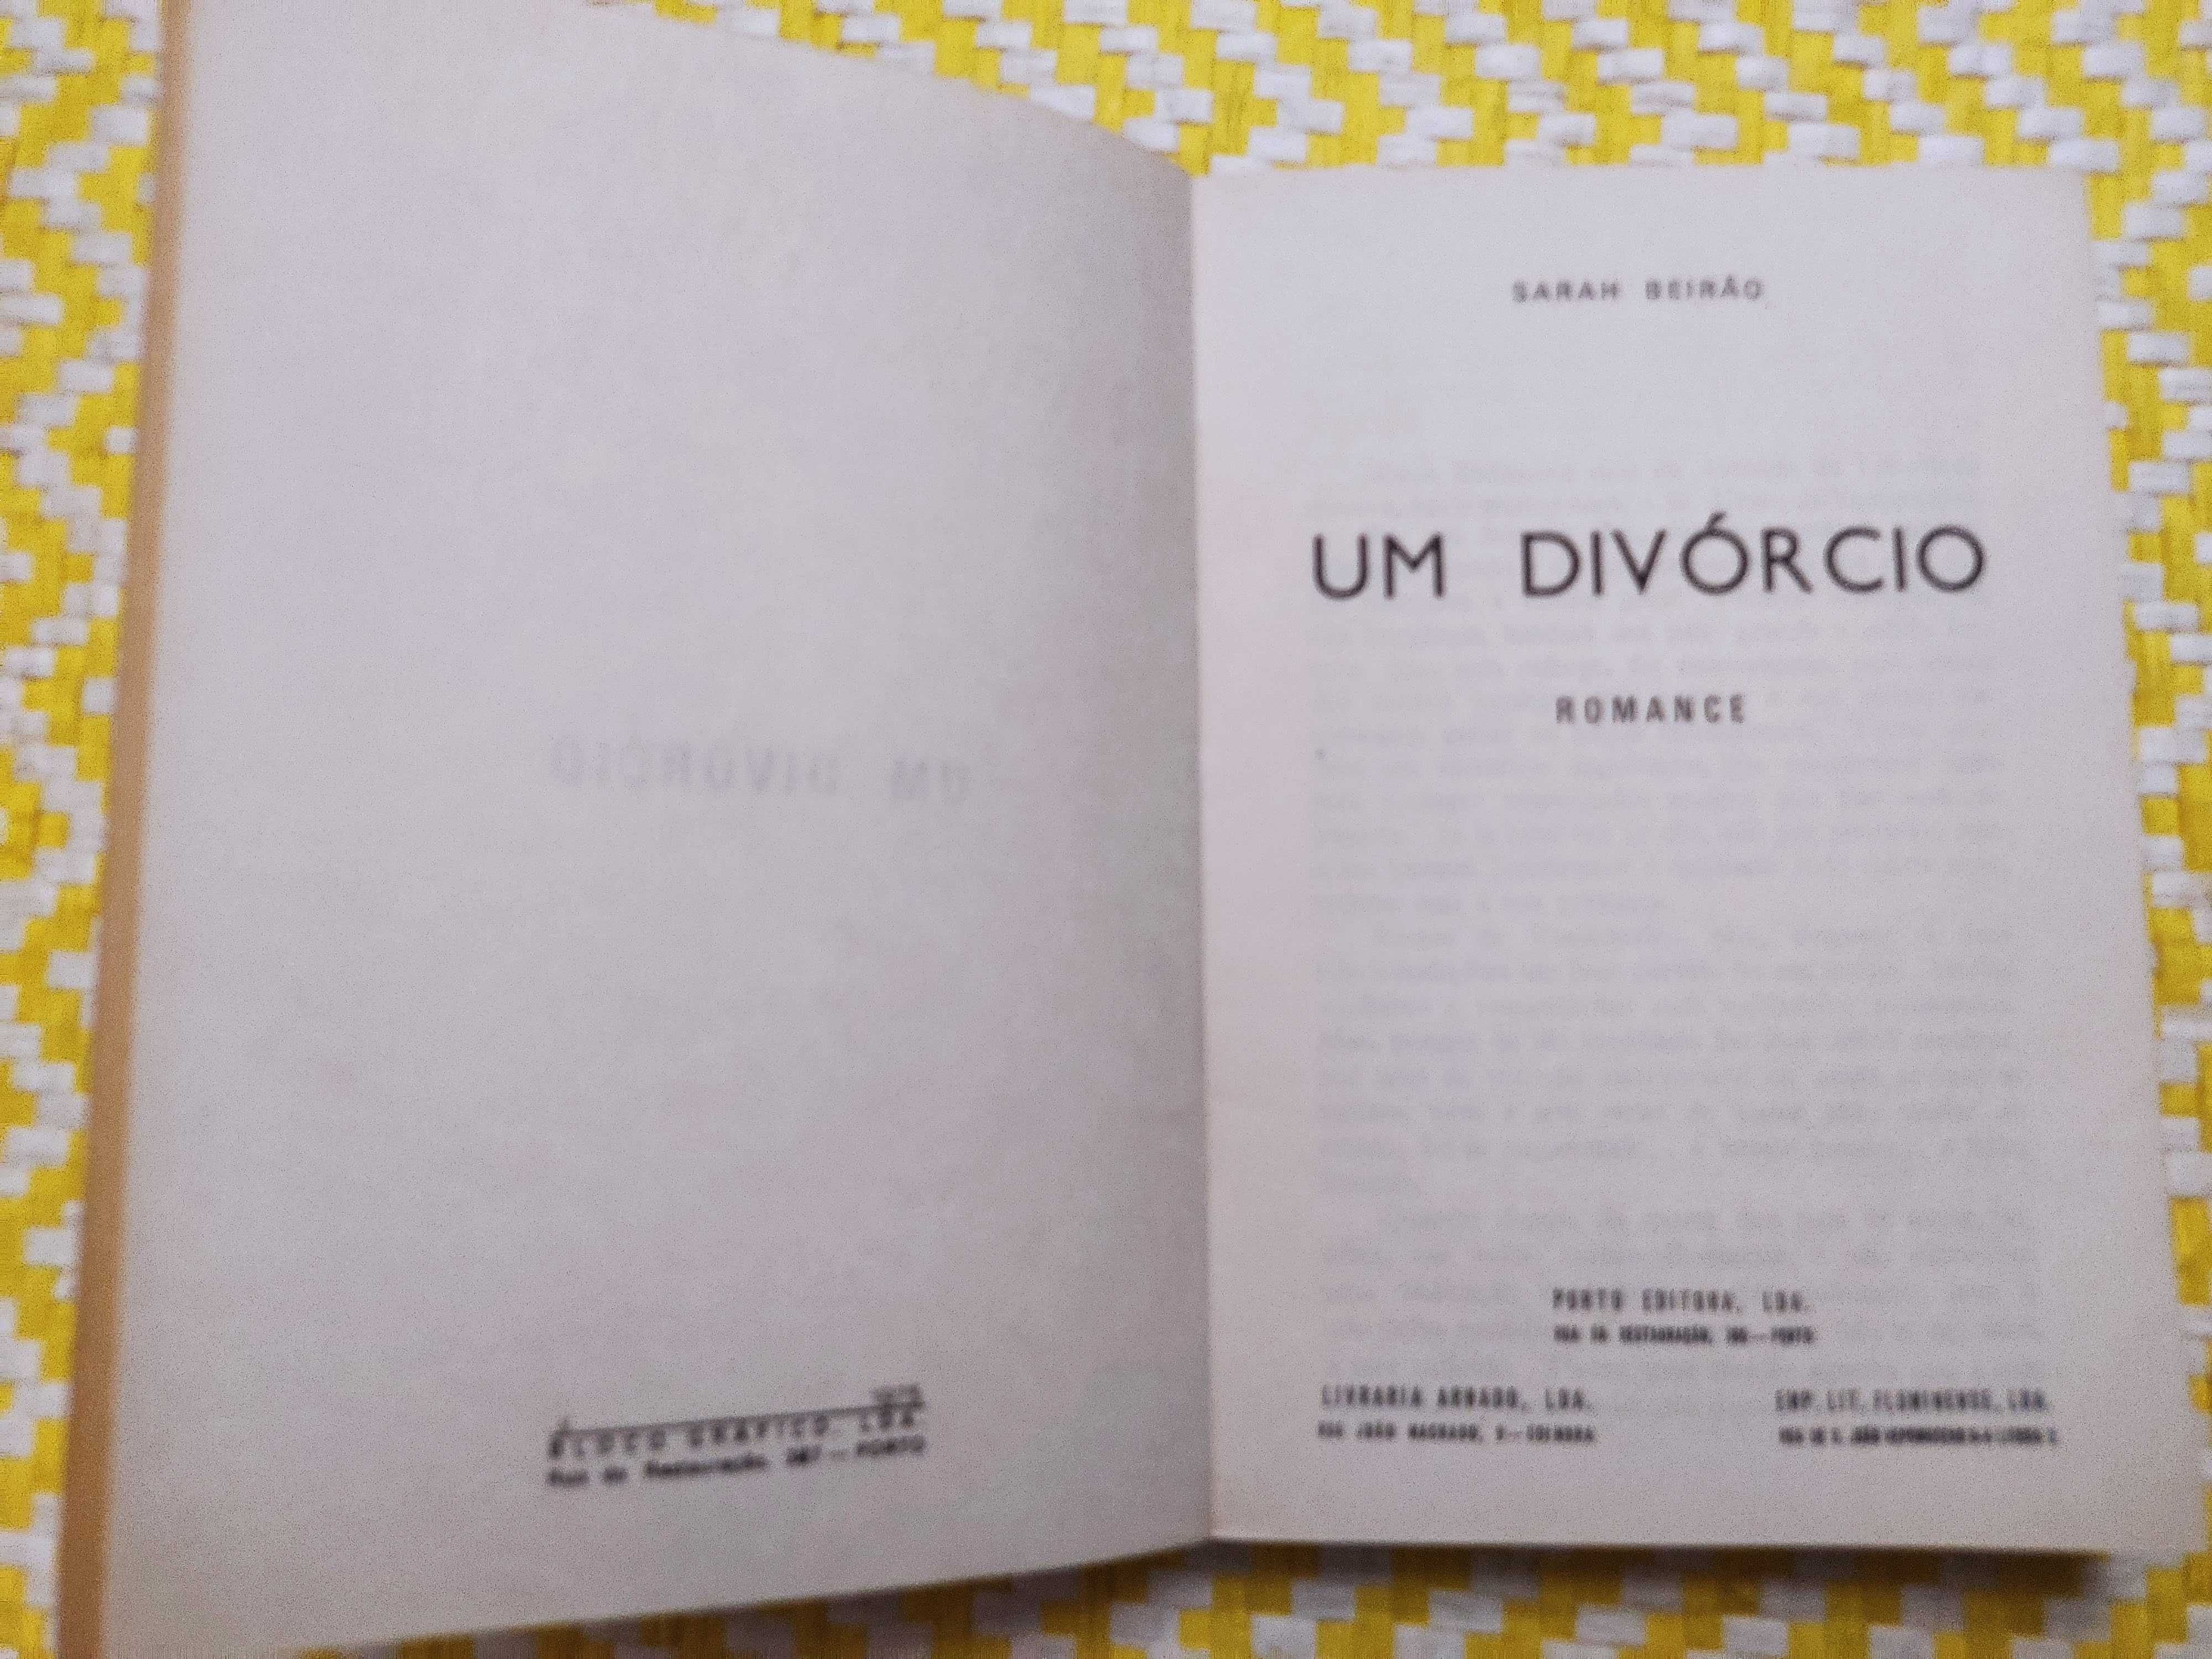 UM DIVÓRCIO
Sarah Beirão
Editora: Porto Editora